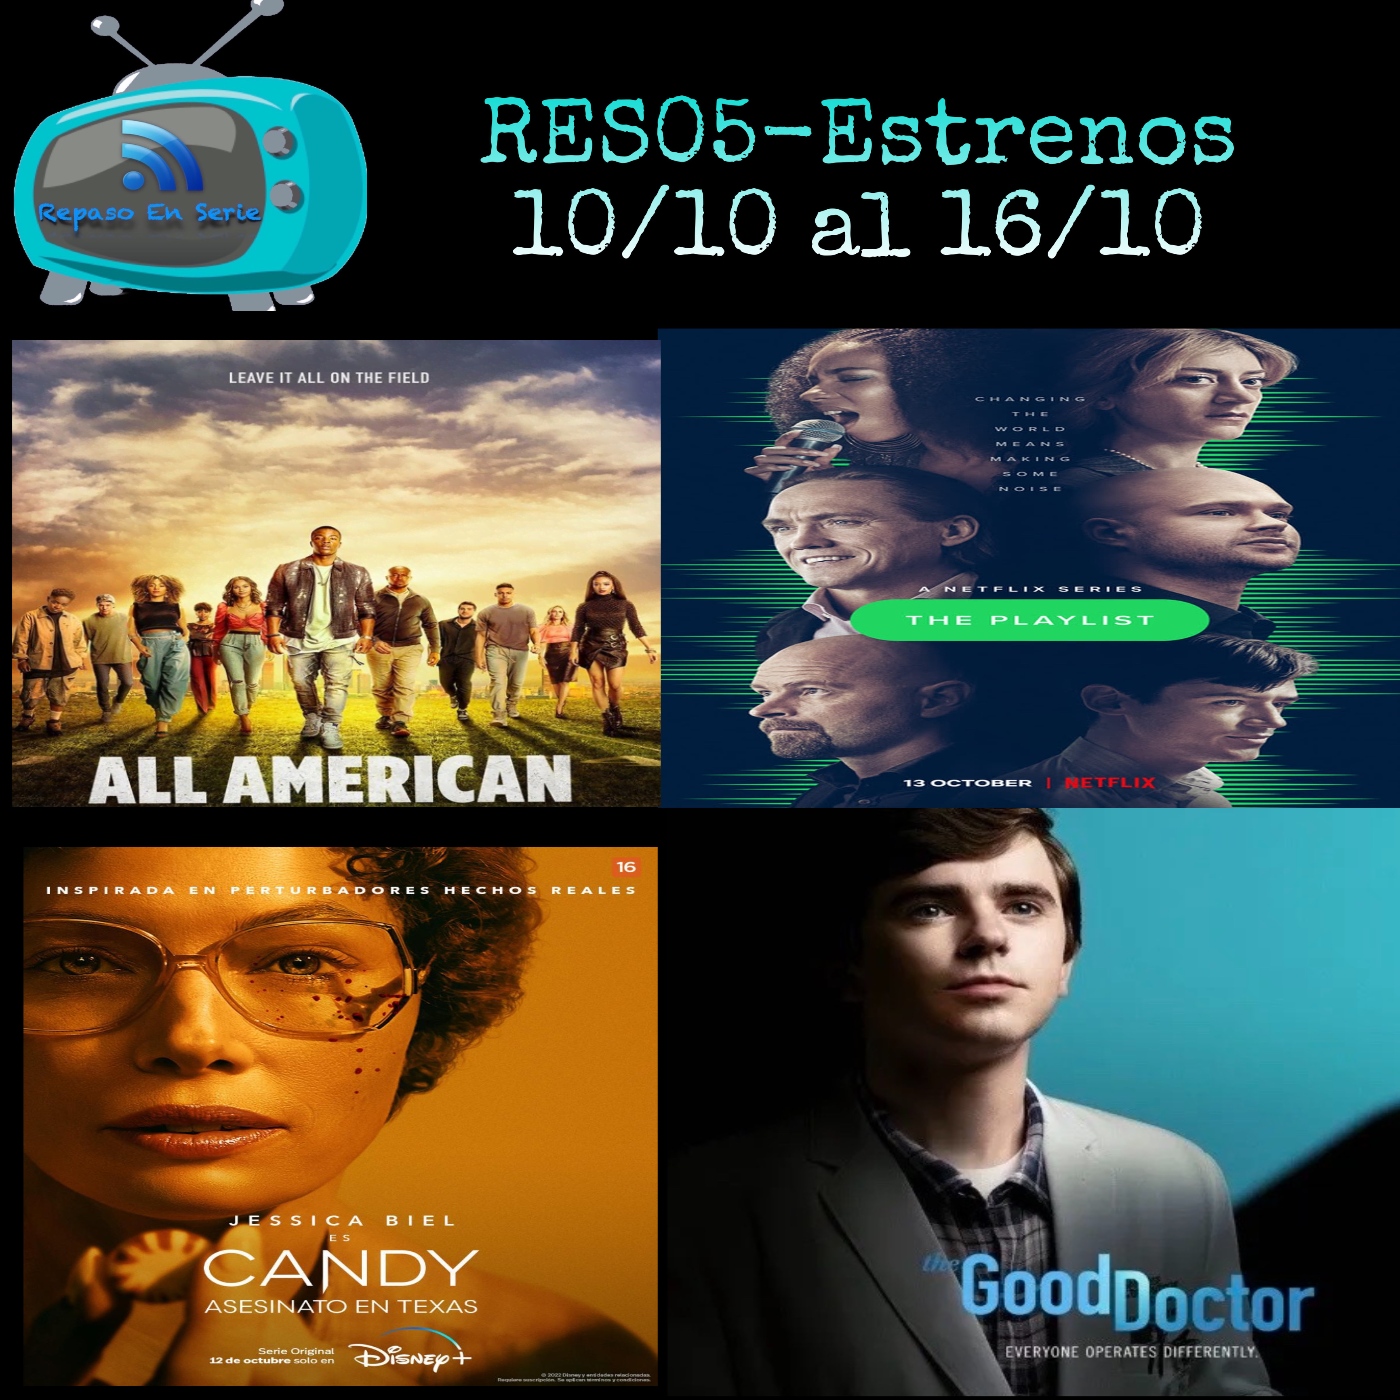 RES05-Estrenos del 10/10 al 16/10 - En Serie - Podcast iVoox